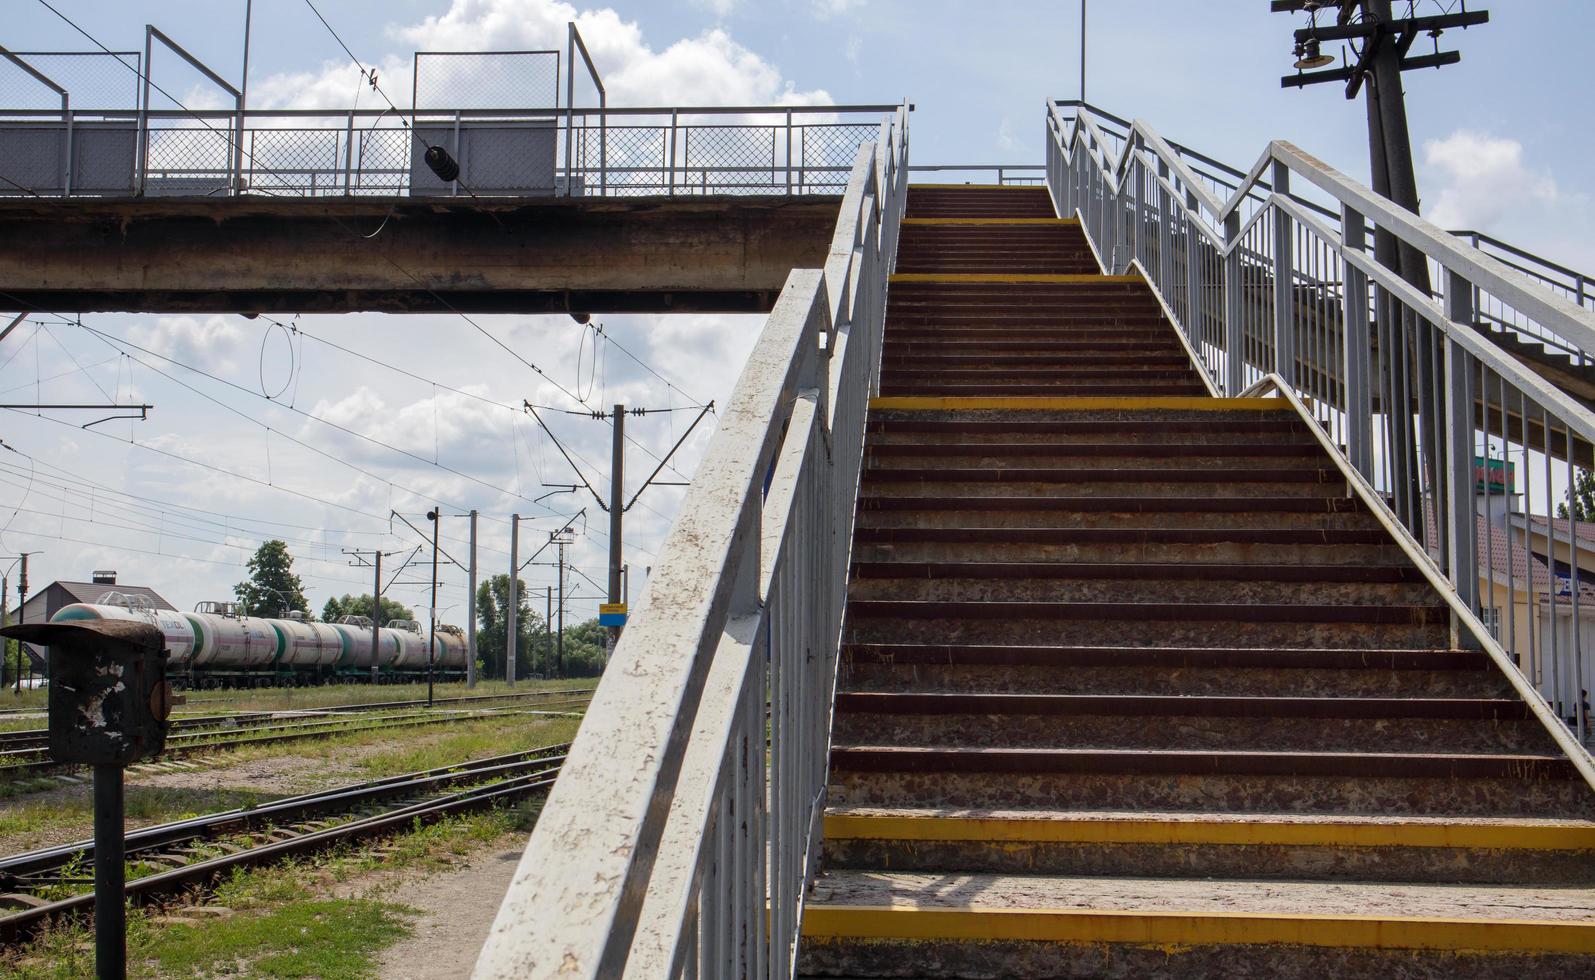 pont de chemin de fer avec marches, avec des marches impressionnantes en perspective. passage piéton aérien. escaliers de pont reliant une plate-forme à une autre à la gare. ukraine, kiev - 19 août 2021. photo